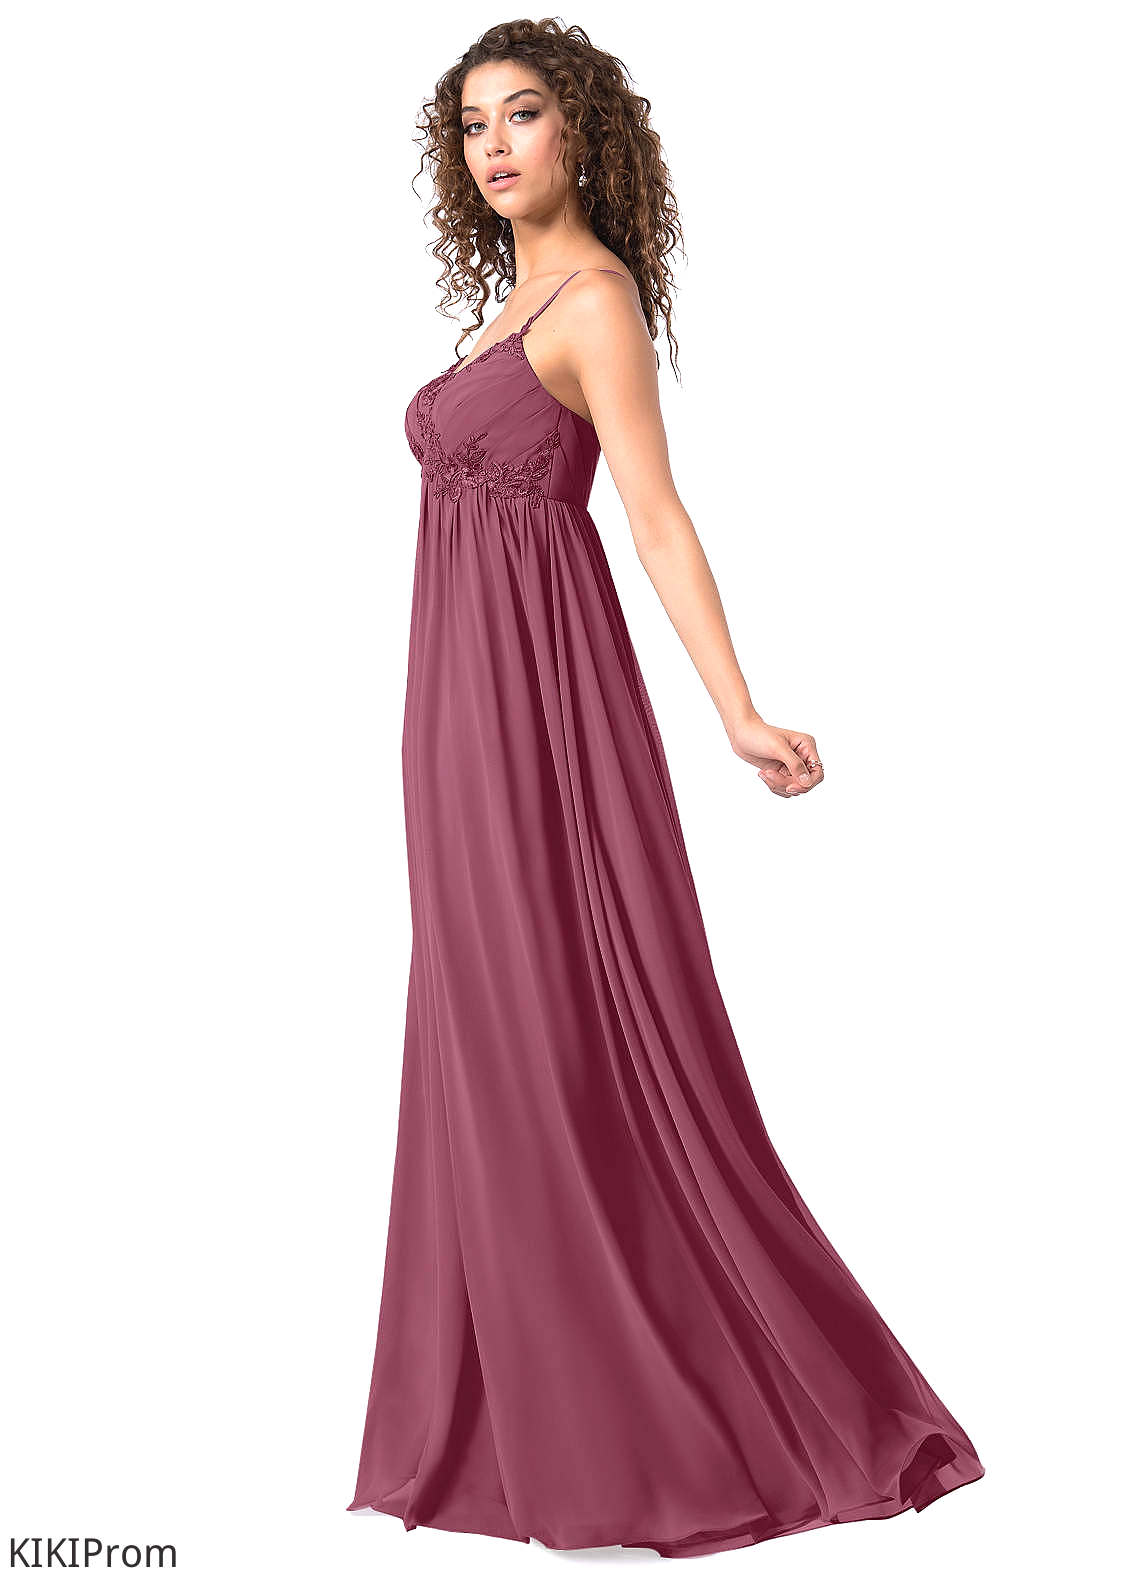 Sam Floor Length Natural Waist Sleeveless A-Line/Princess Straps Bridesmaid Dresses